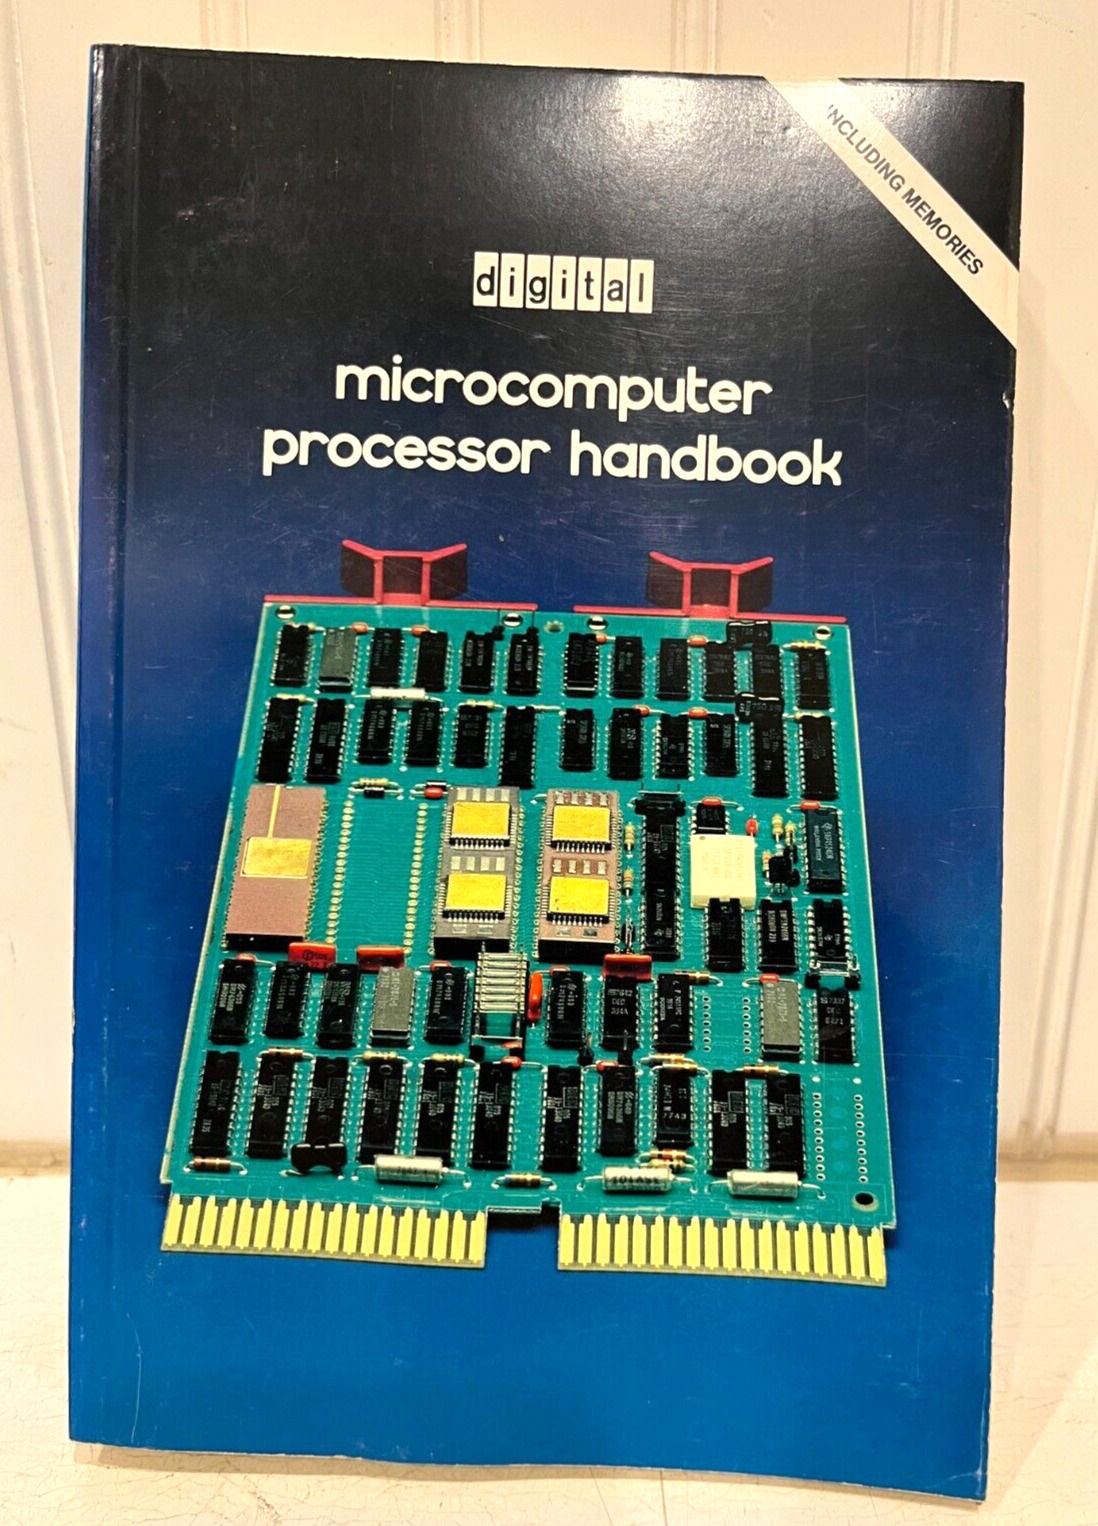 DEC DIGITAL MICROCOMPUTER PROCESSOR HANDBOOK, 1979-80 - VINTAGE COMPUTING